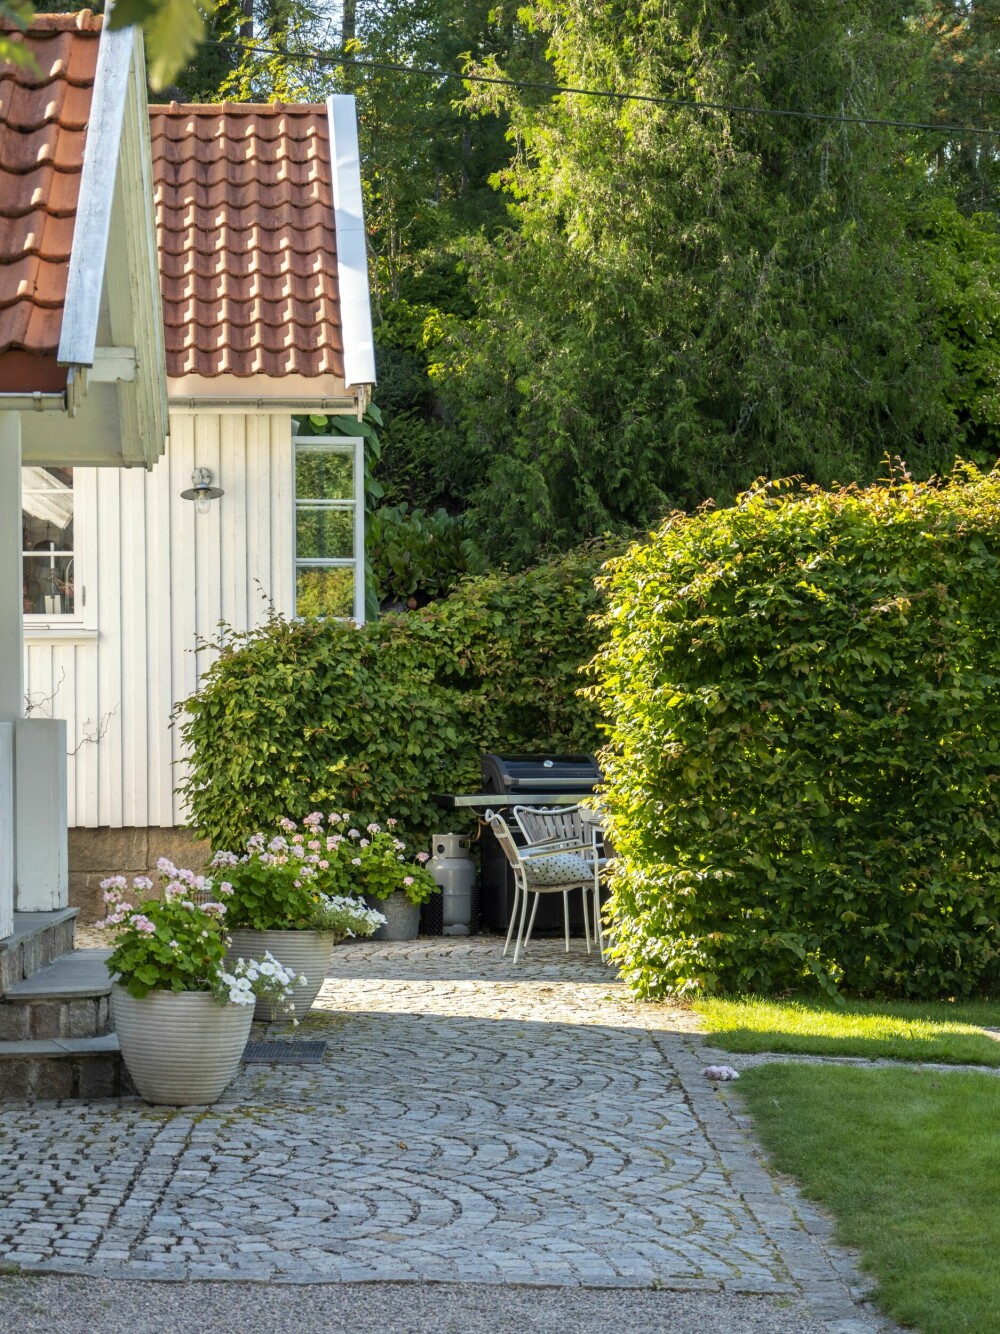 HEKK: En hekk kan også brukes til å skape «hemmelige» rom i hagen. Bak denne høye, ovale agnbøkhekken åpenbarer det seg en lun og vakker sitteplass på gamle brostein, med fantastisk sjøutsikt. Foto: Jane Ødegaard